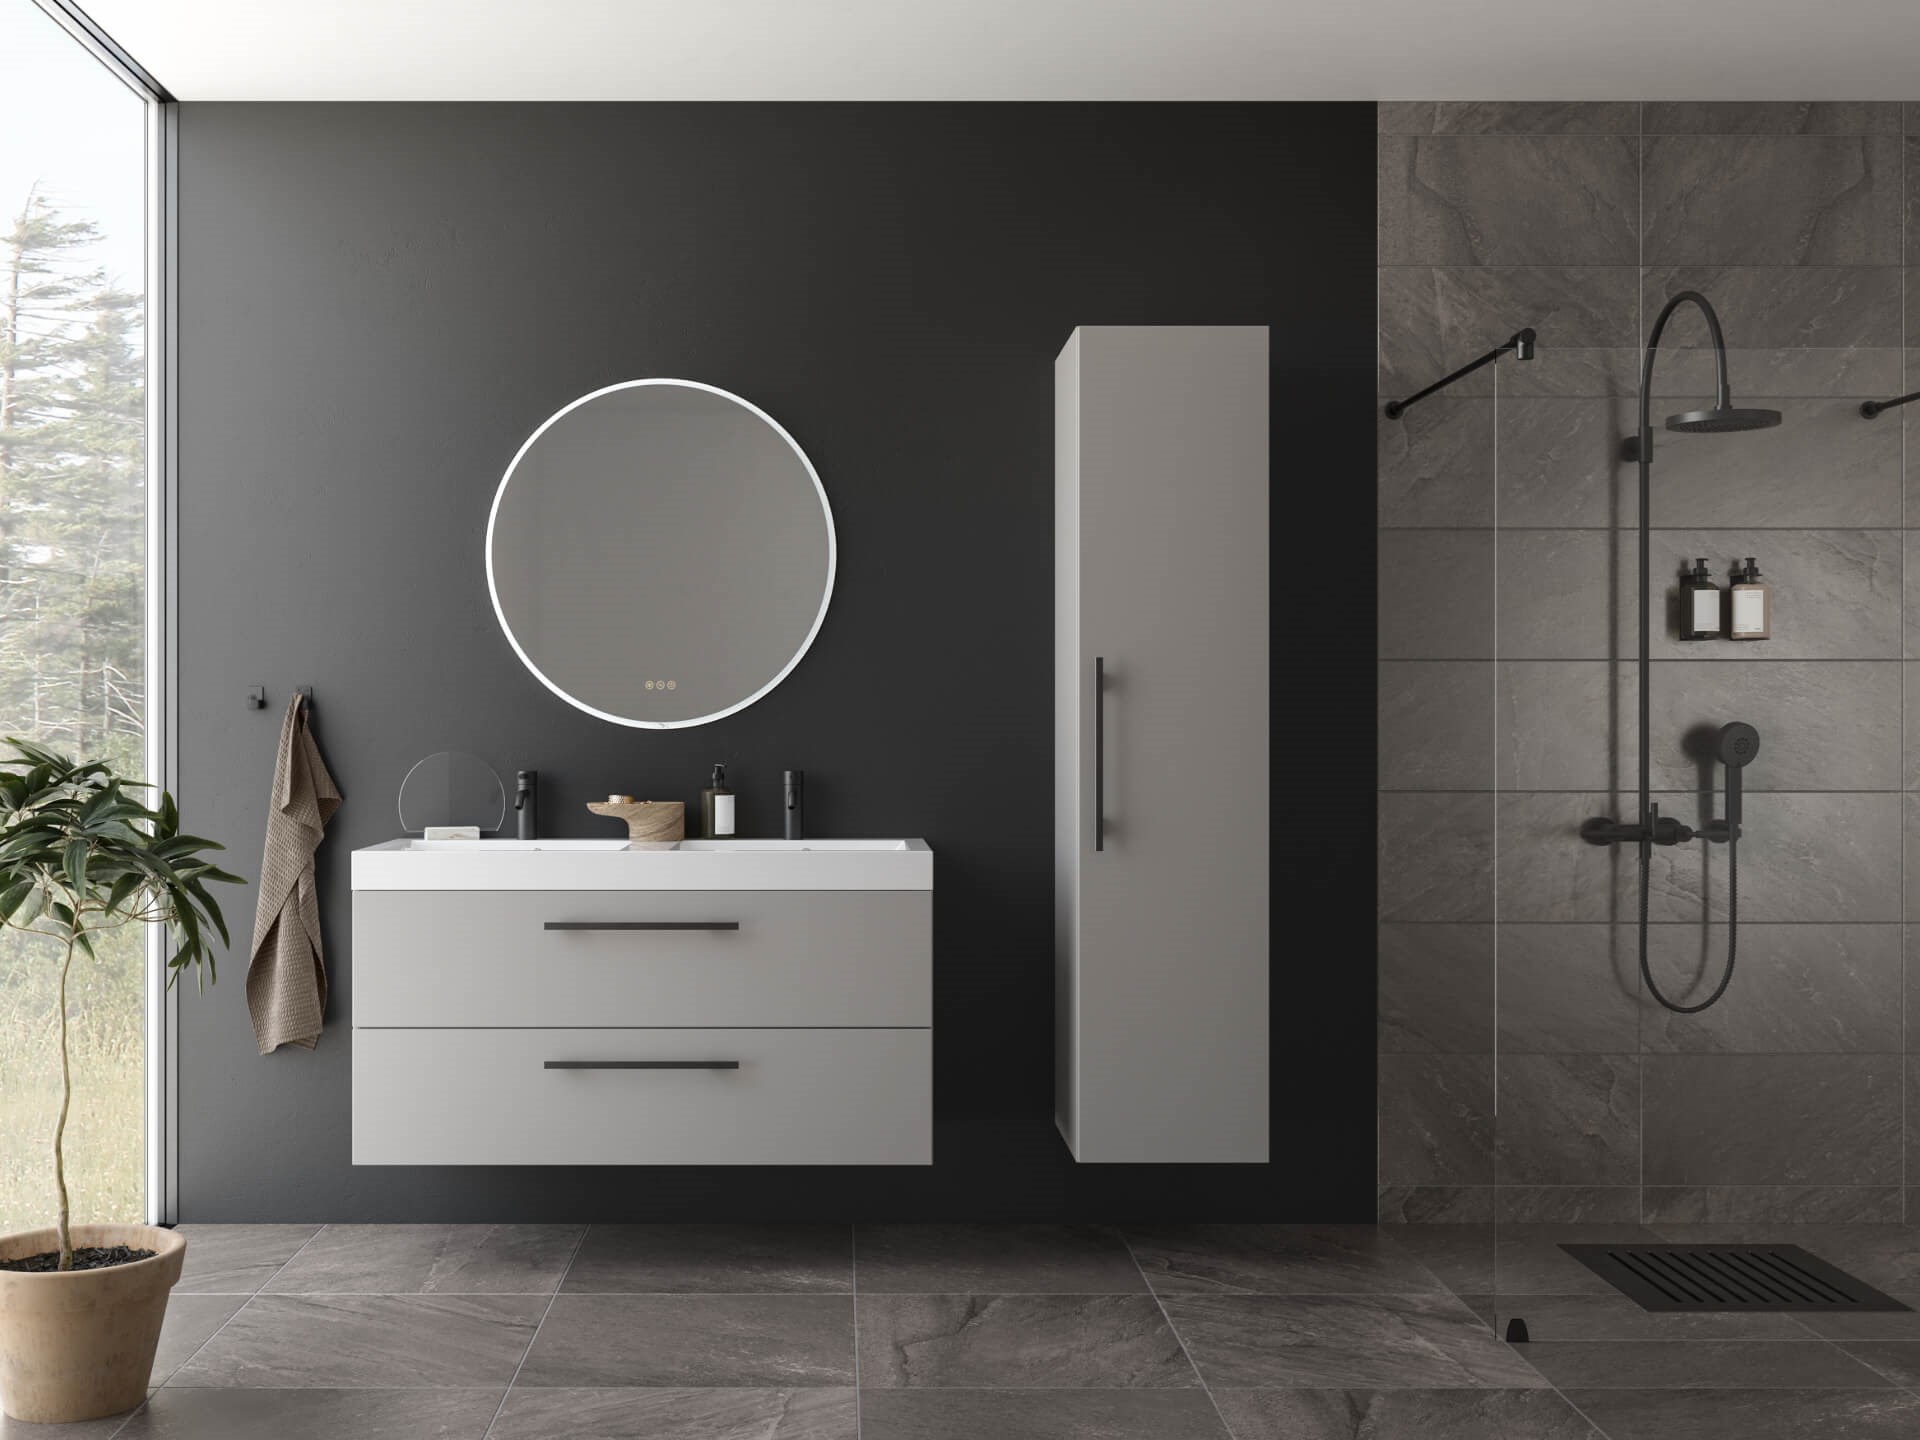 Miljøbilde grått baderomsinteriør og vegger. Sort blandebatteri til servant og dusjarmatur. Mørkt bad med rundt speil.